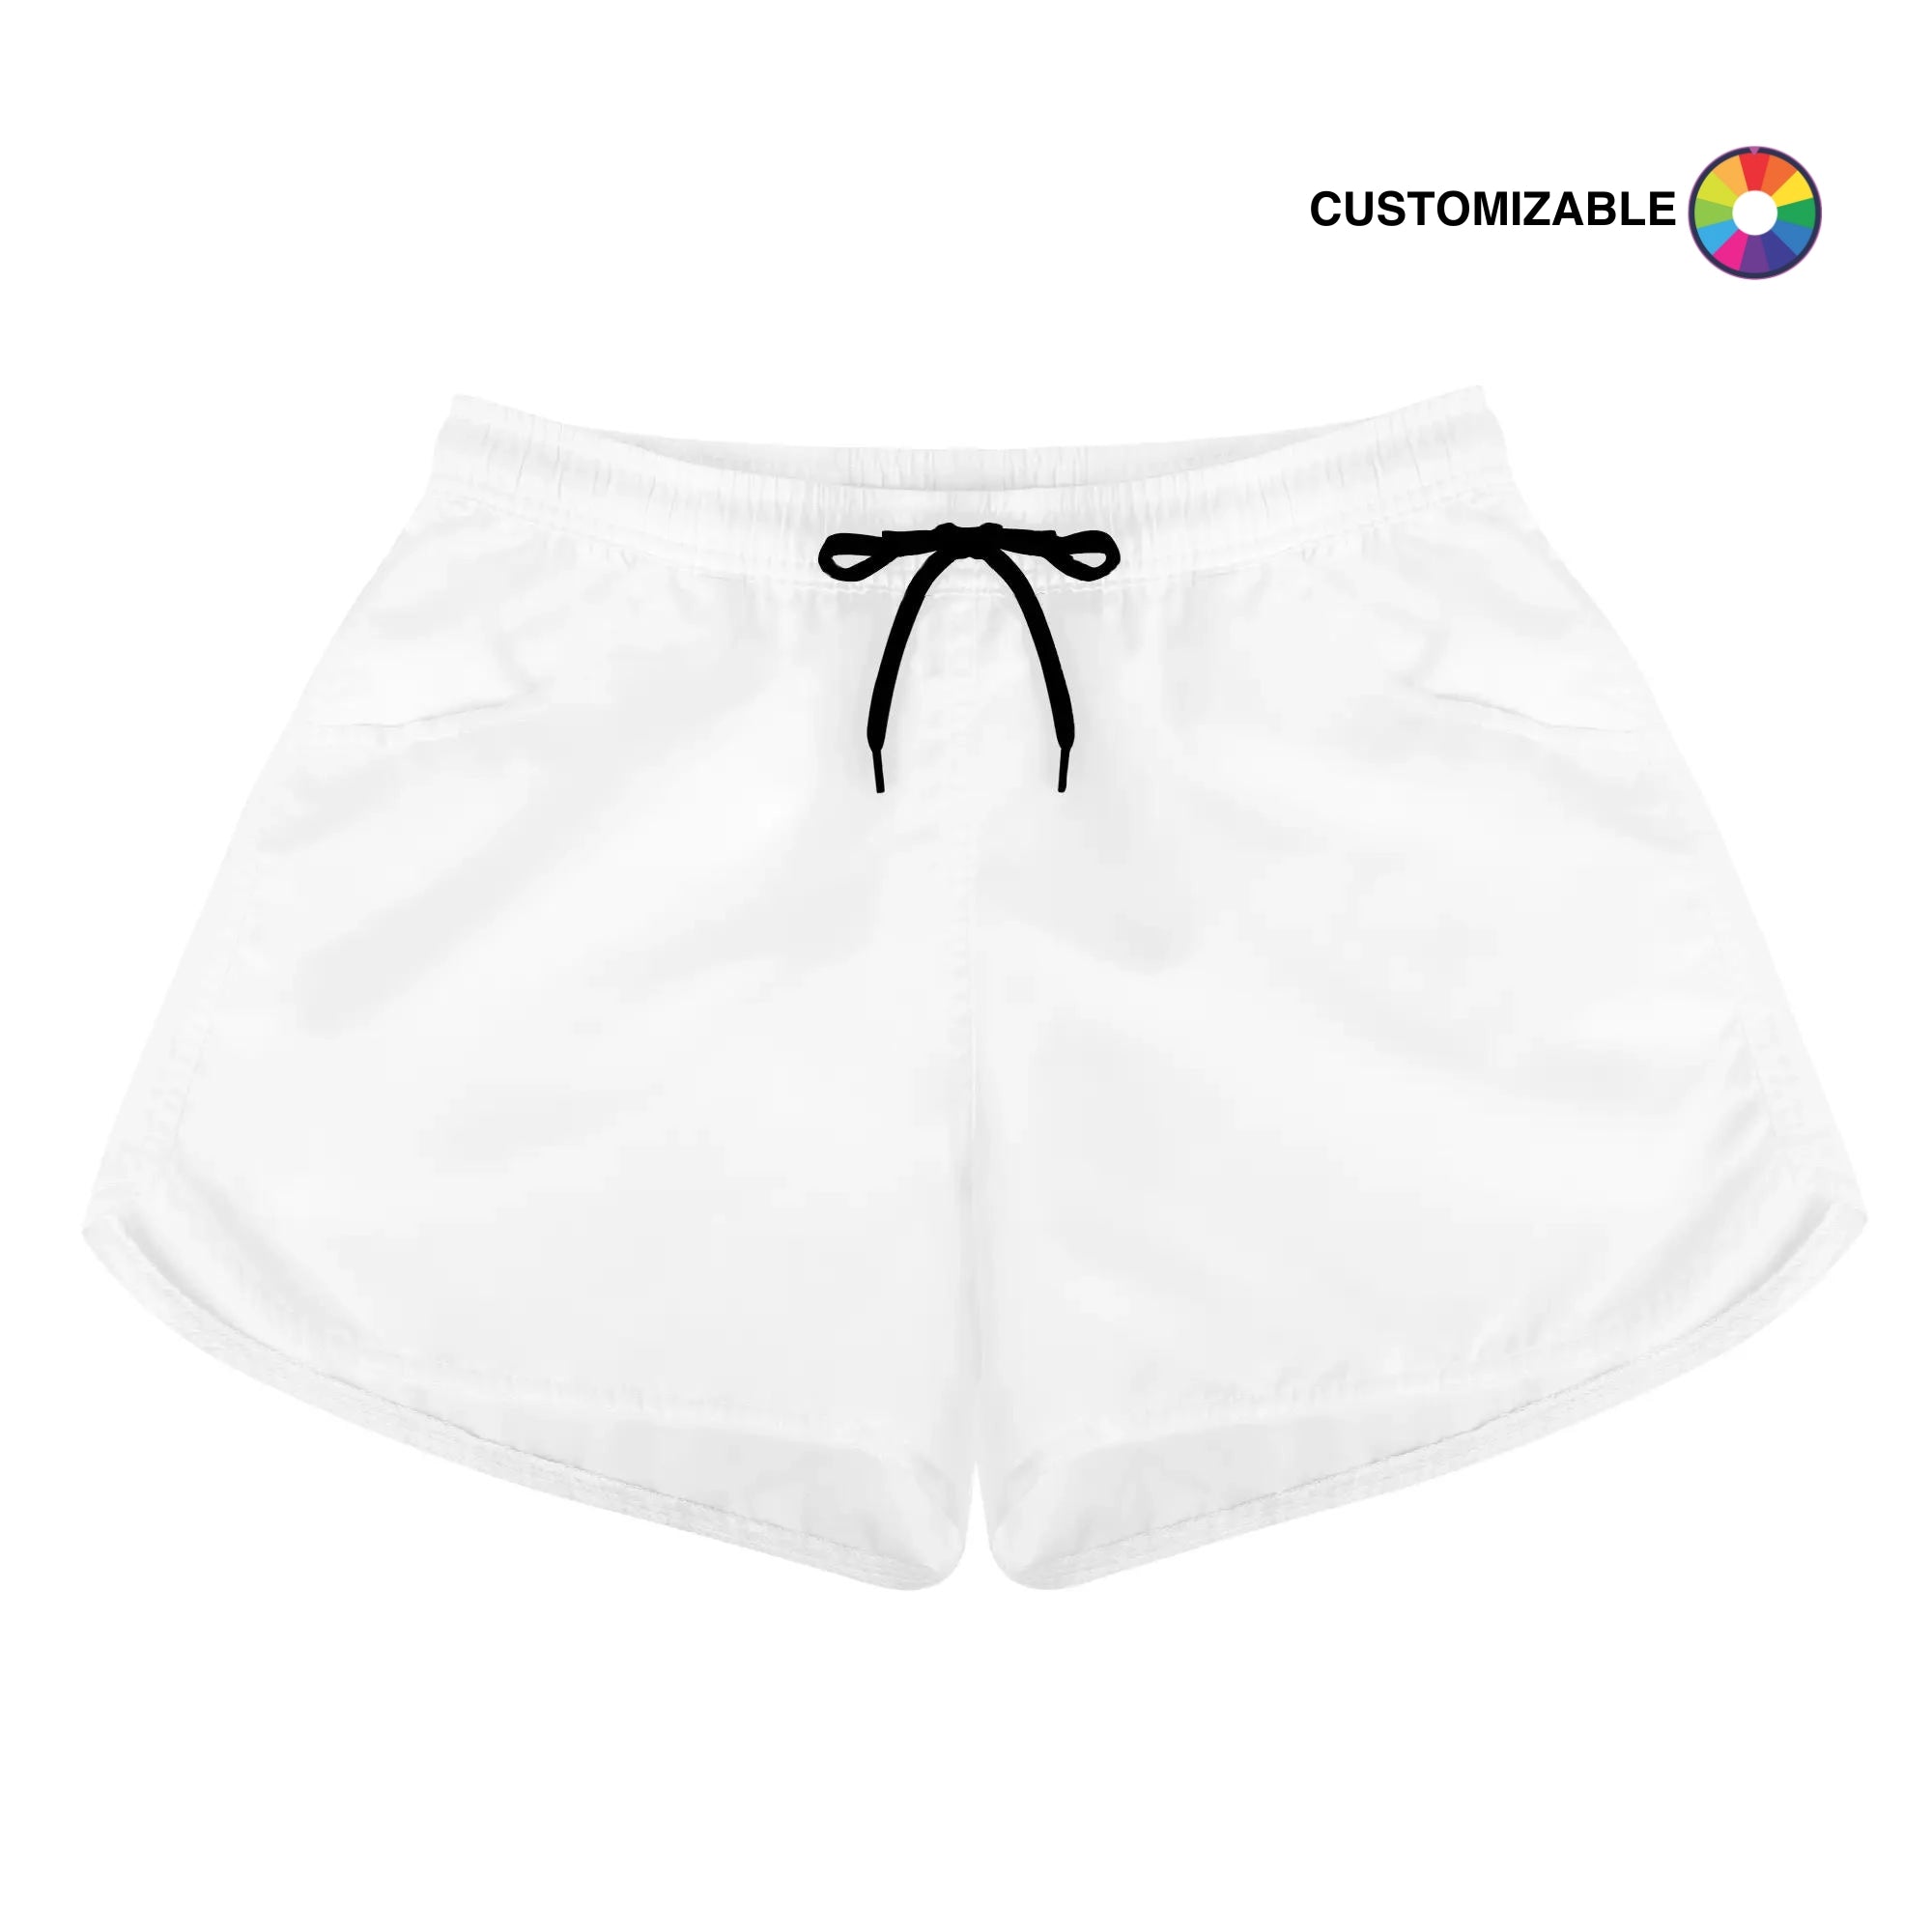 Customizable Women's Casual Shorts | Design your own | Shoe Zero